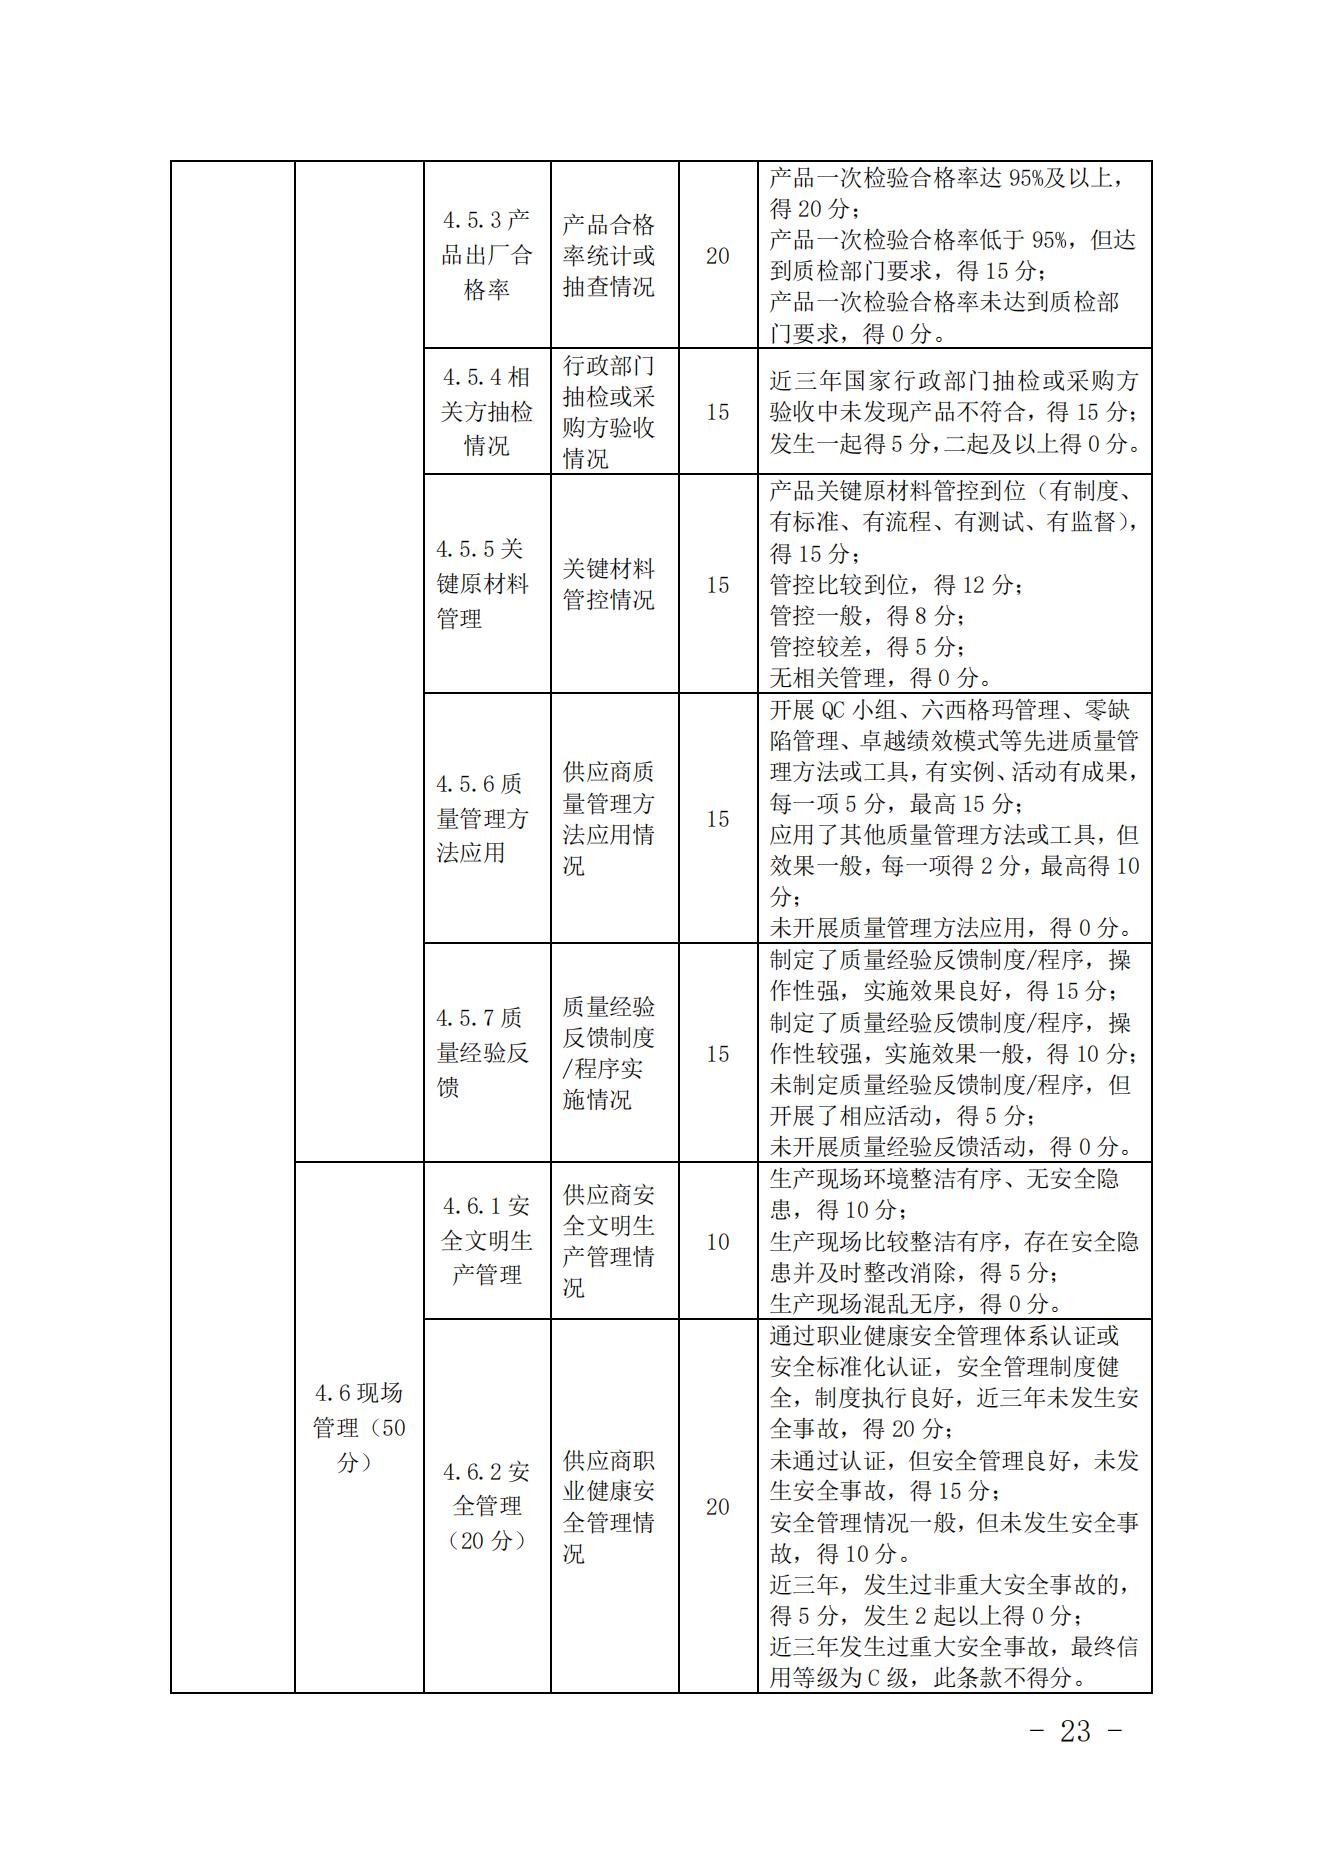 关于印发《中国核能行业协会核能行业供应商信用评价管理办法》《中国核能行业协会核能行业供应商信用评价规范》的通知_22.jpg